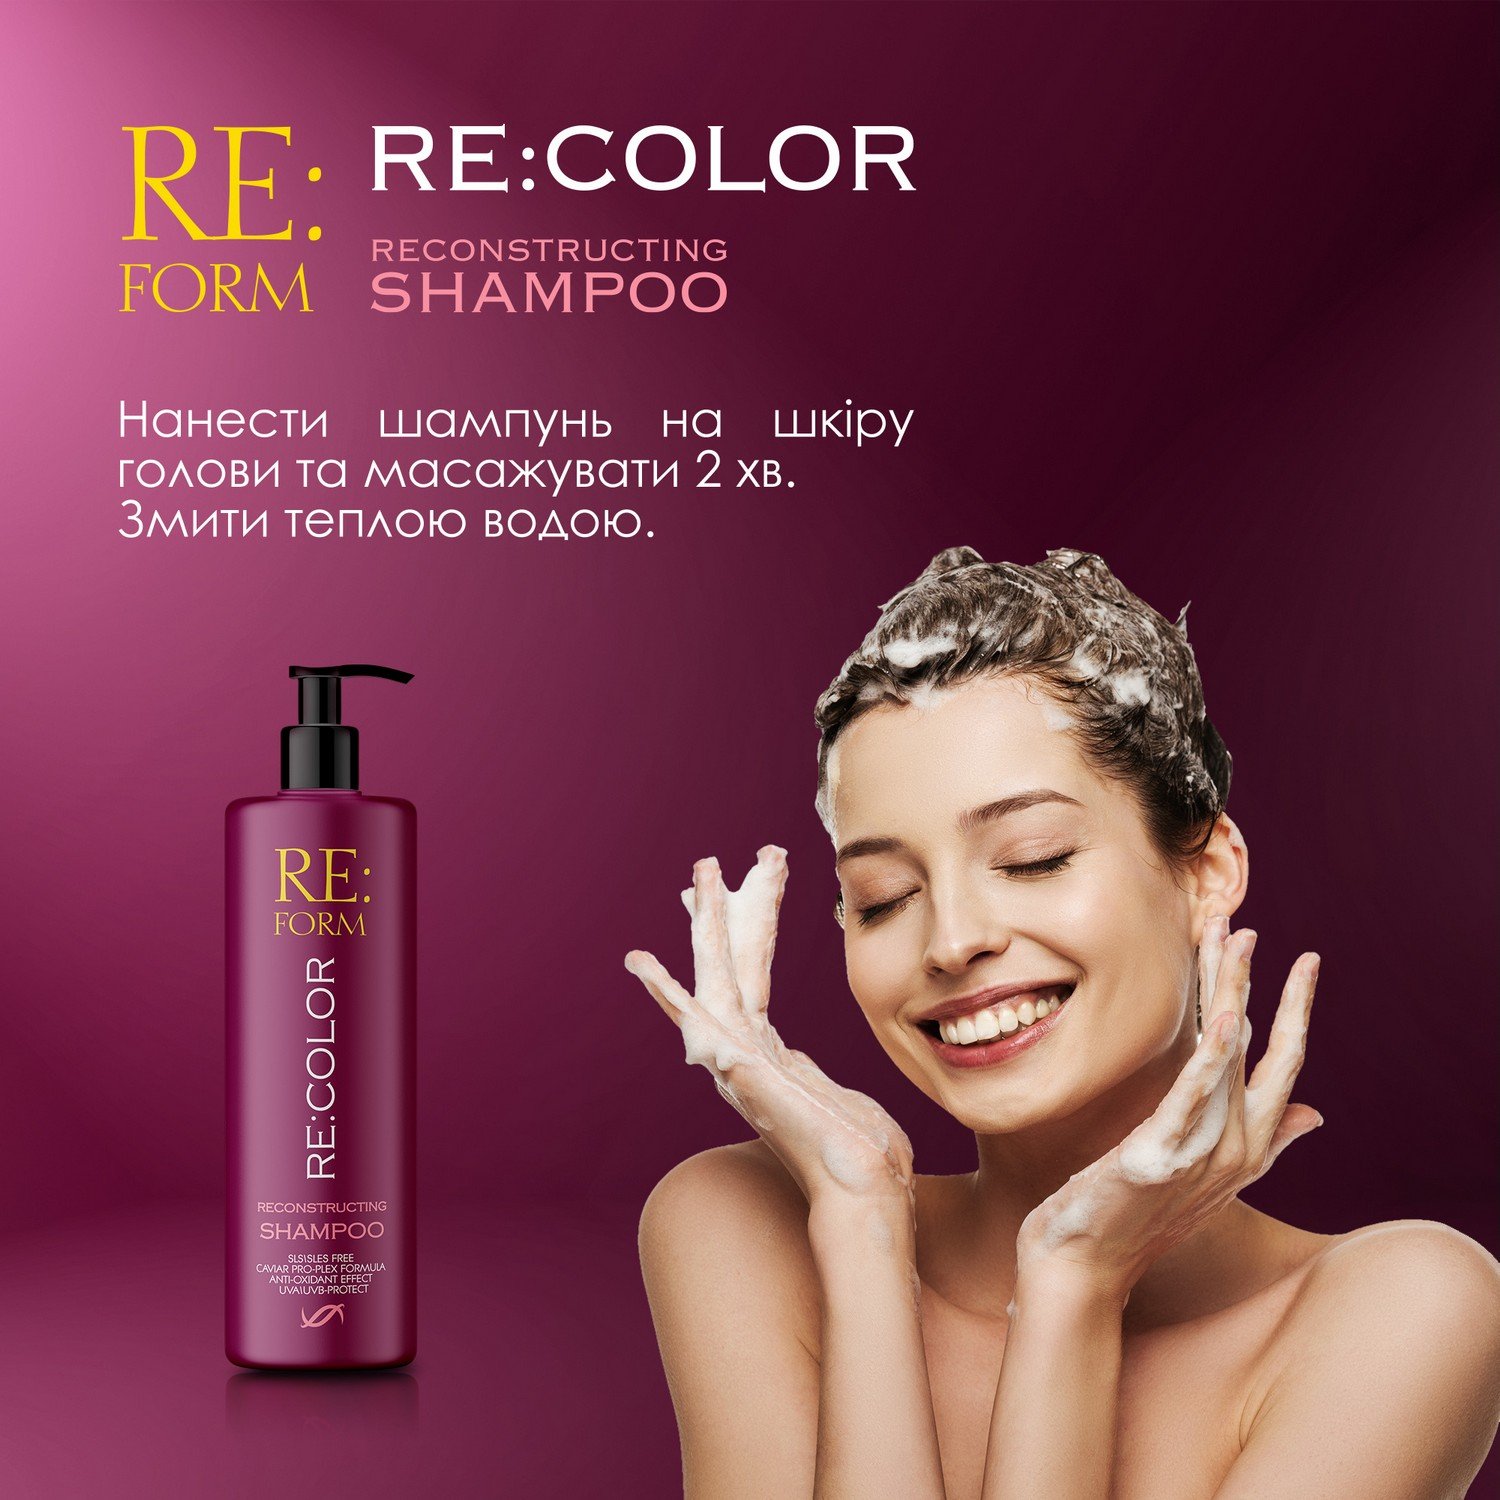 Реконструирующий шампунь Re:form Re:color Сохранение цвета и восстановление окрашенных волос, 400 мл - фото 8